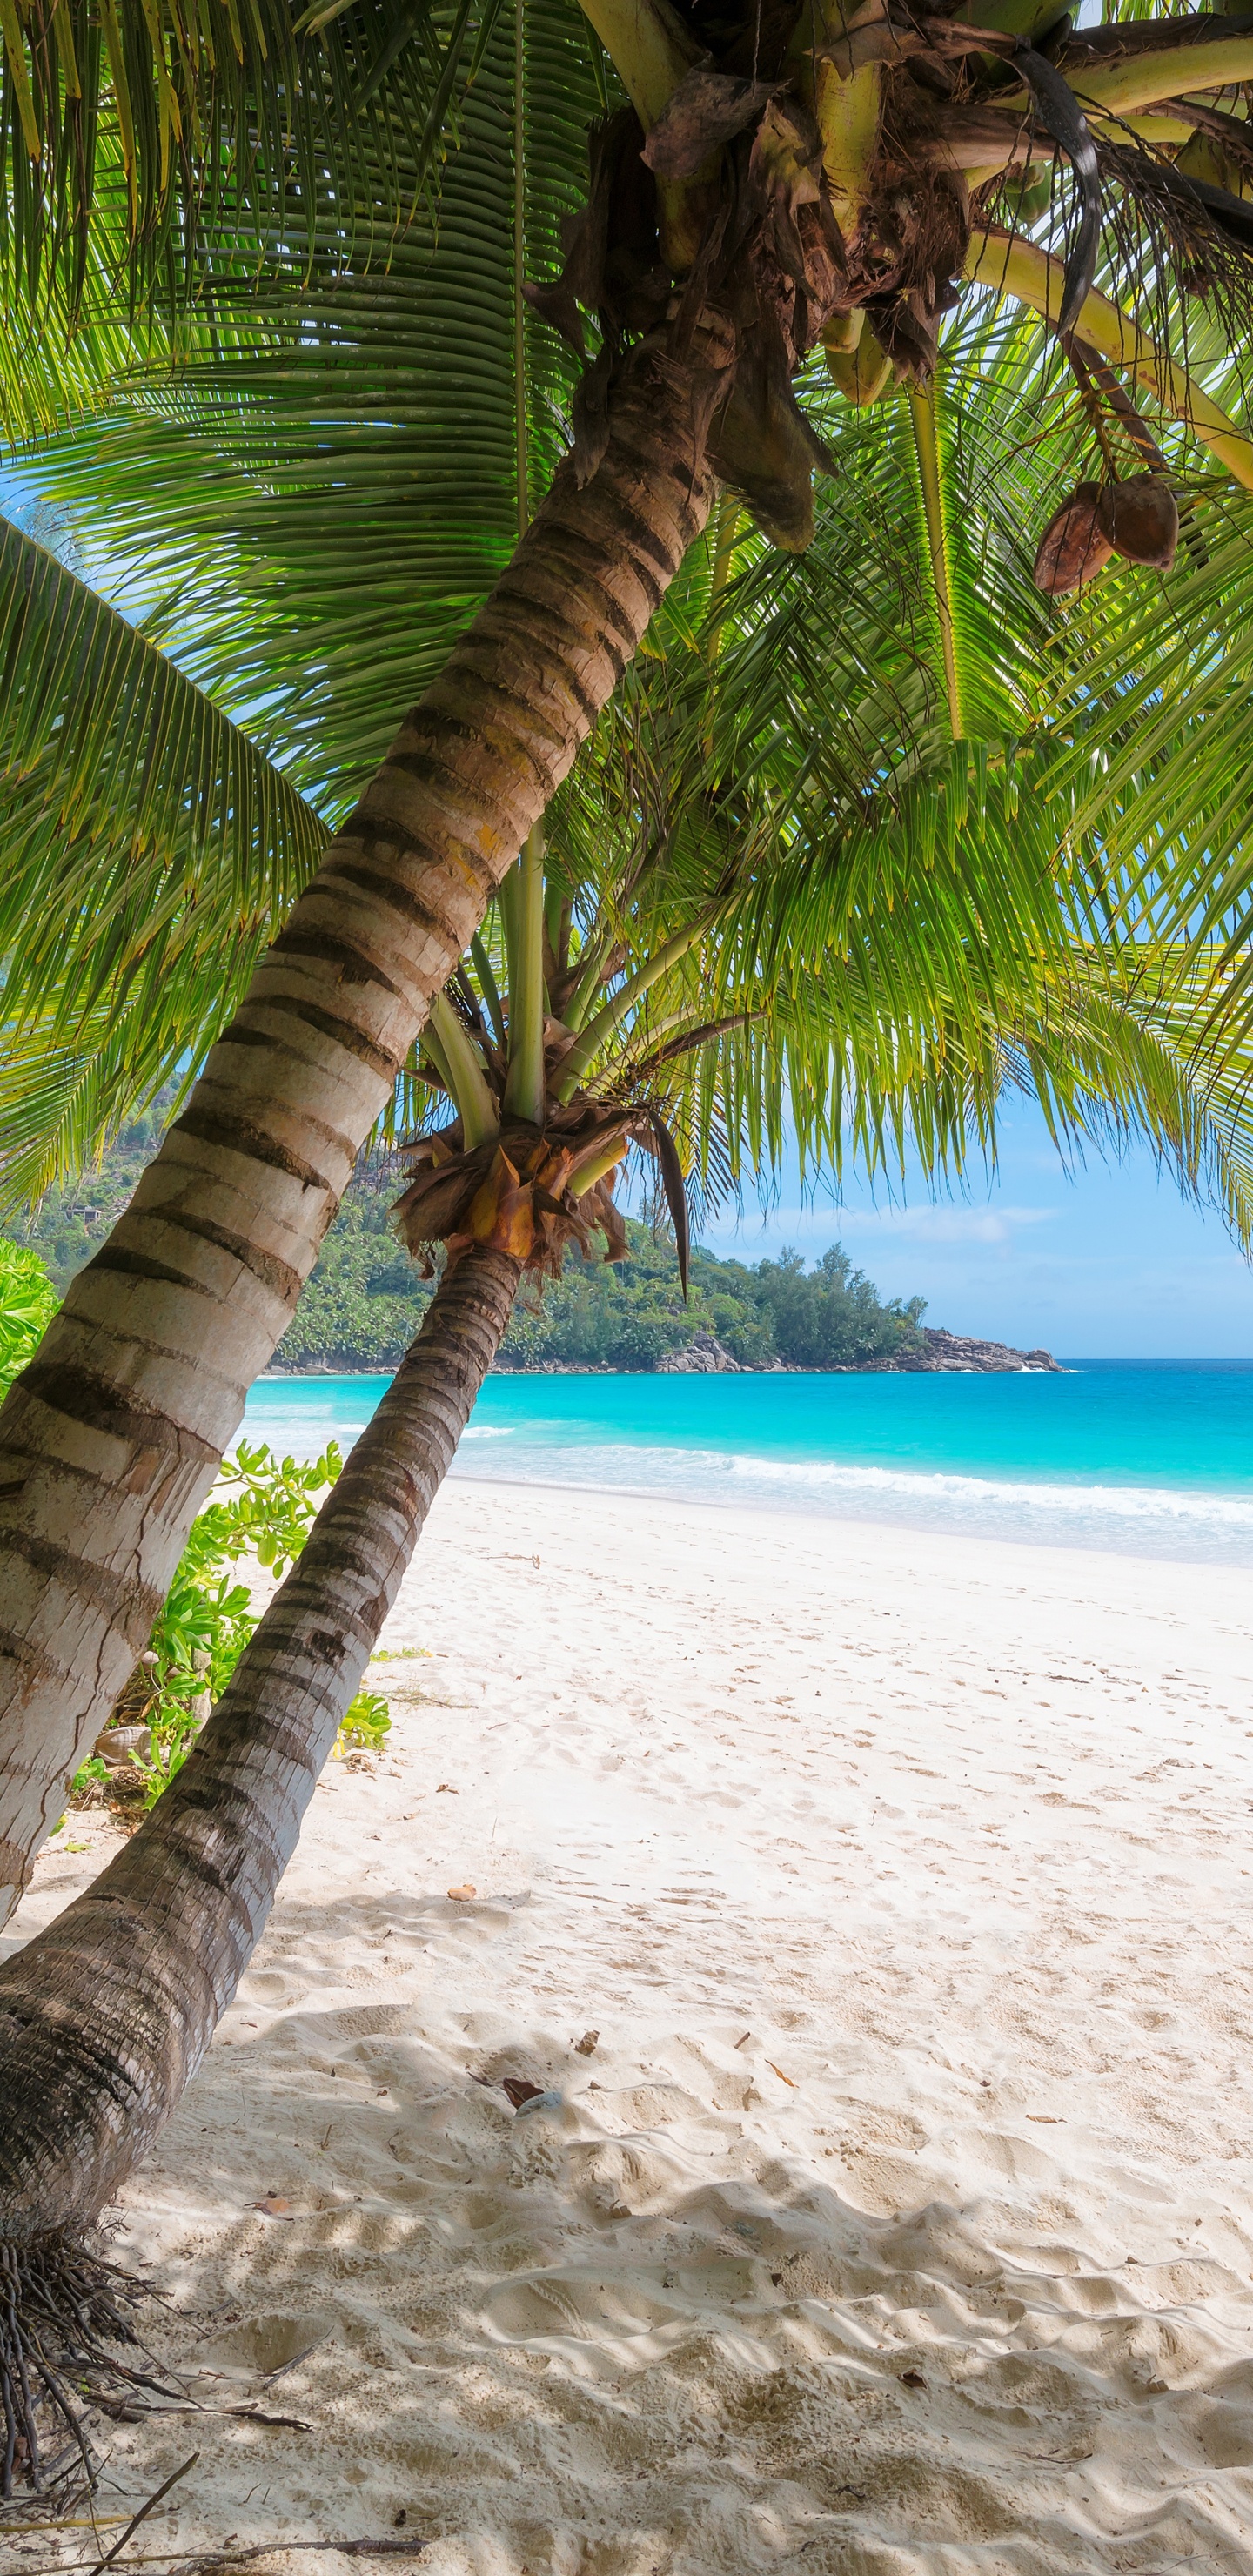 岸边, 热带地区, 加勒比, 度假, 度假村 壁纸 1440x2960 允许